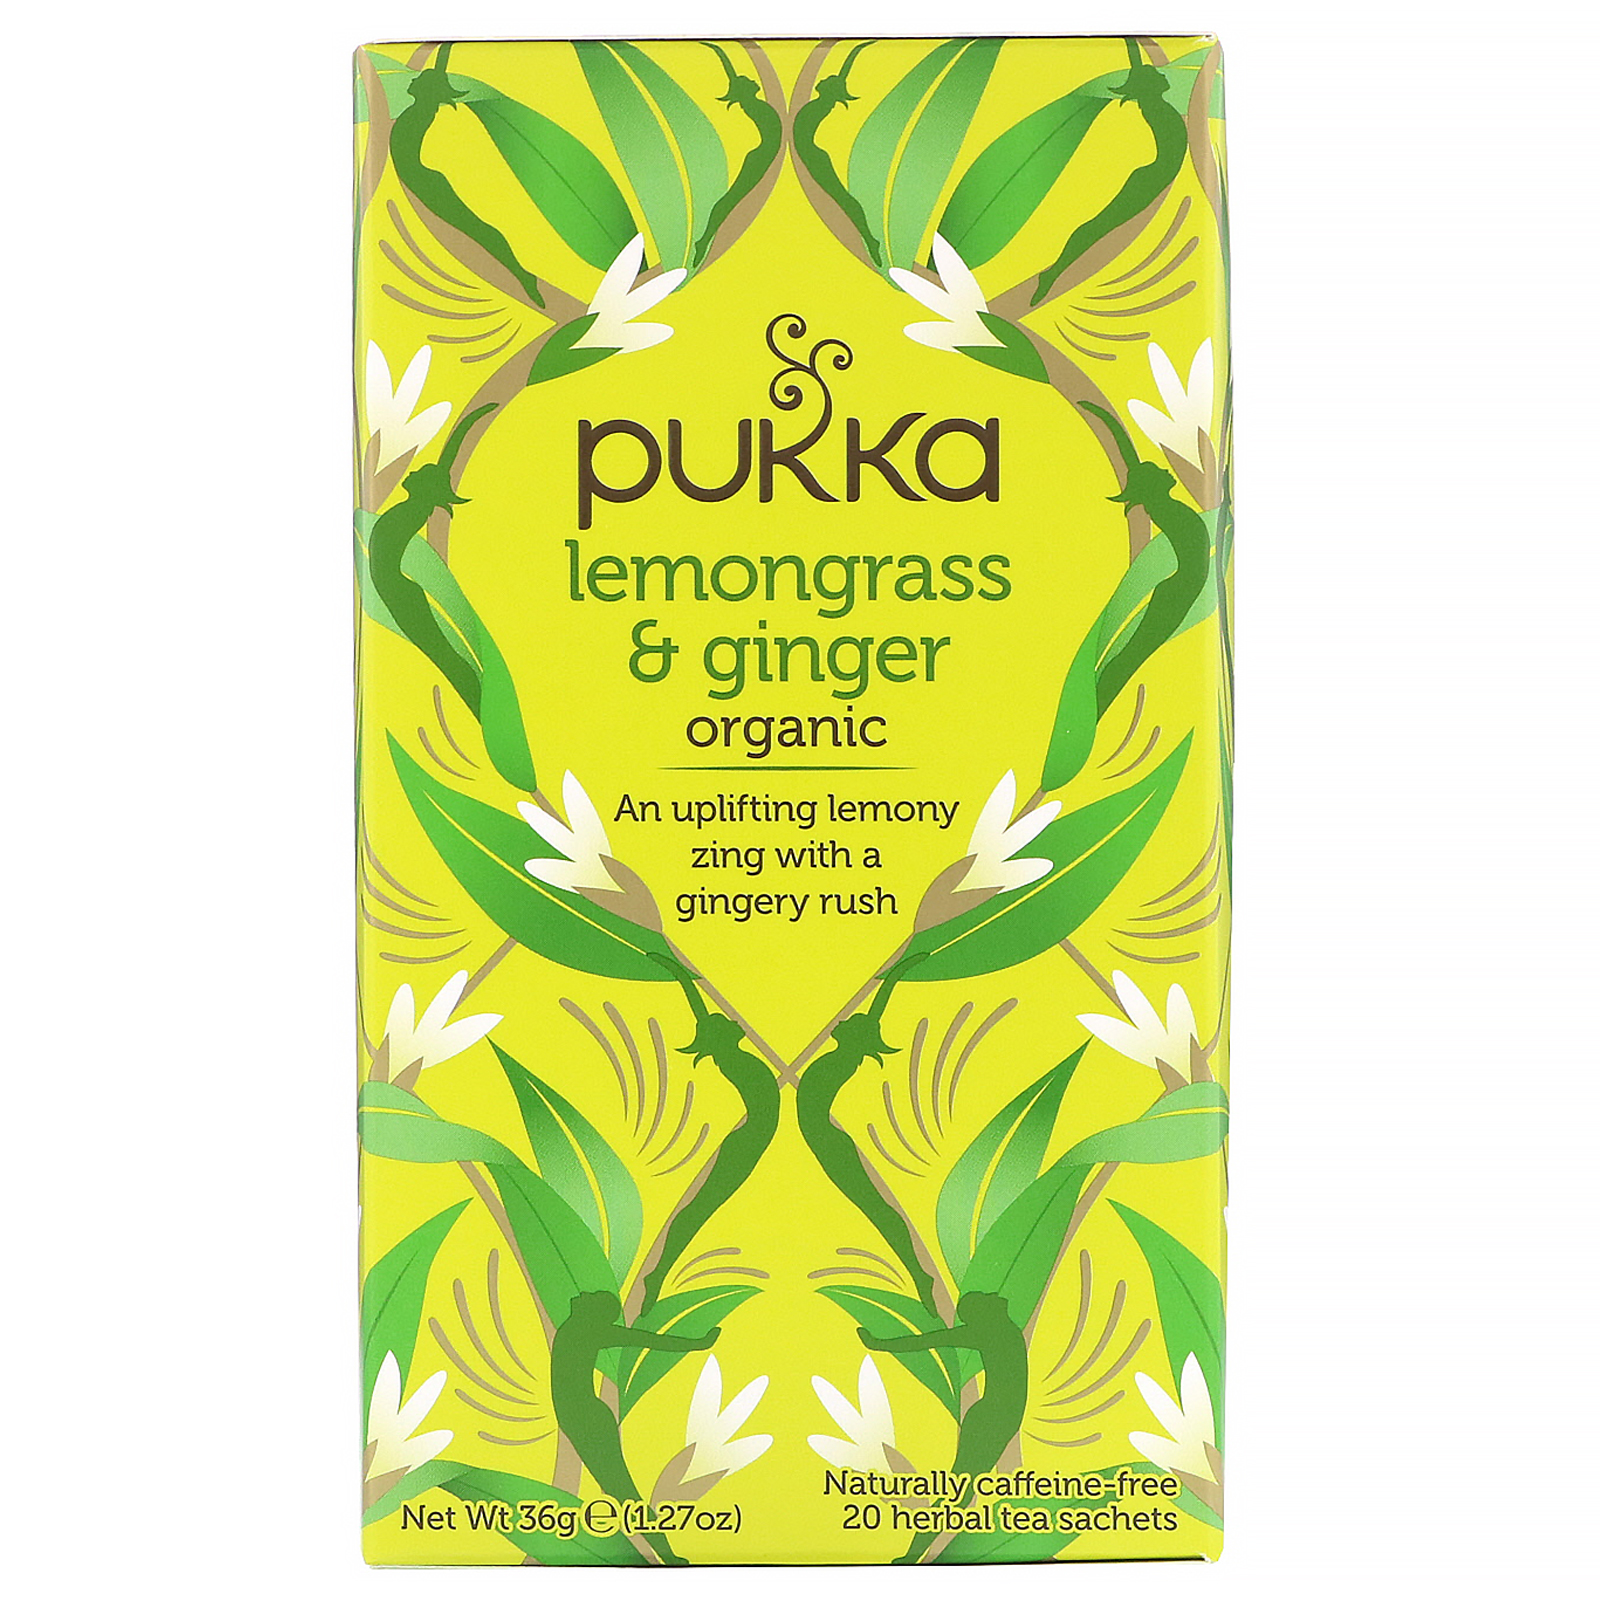 Pukka Lemongrass & Ginger Organic 20 Herbal Tea Sachets